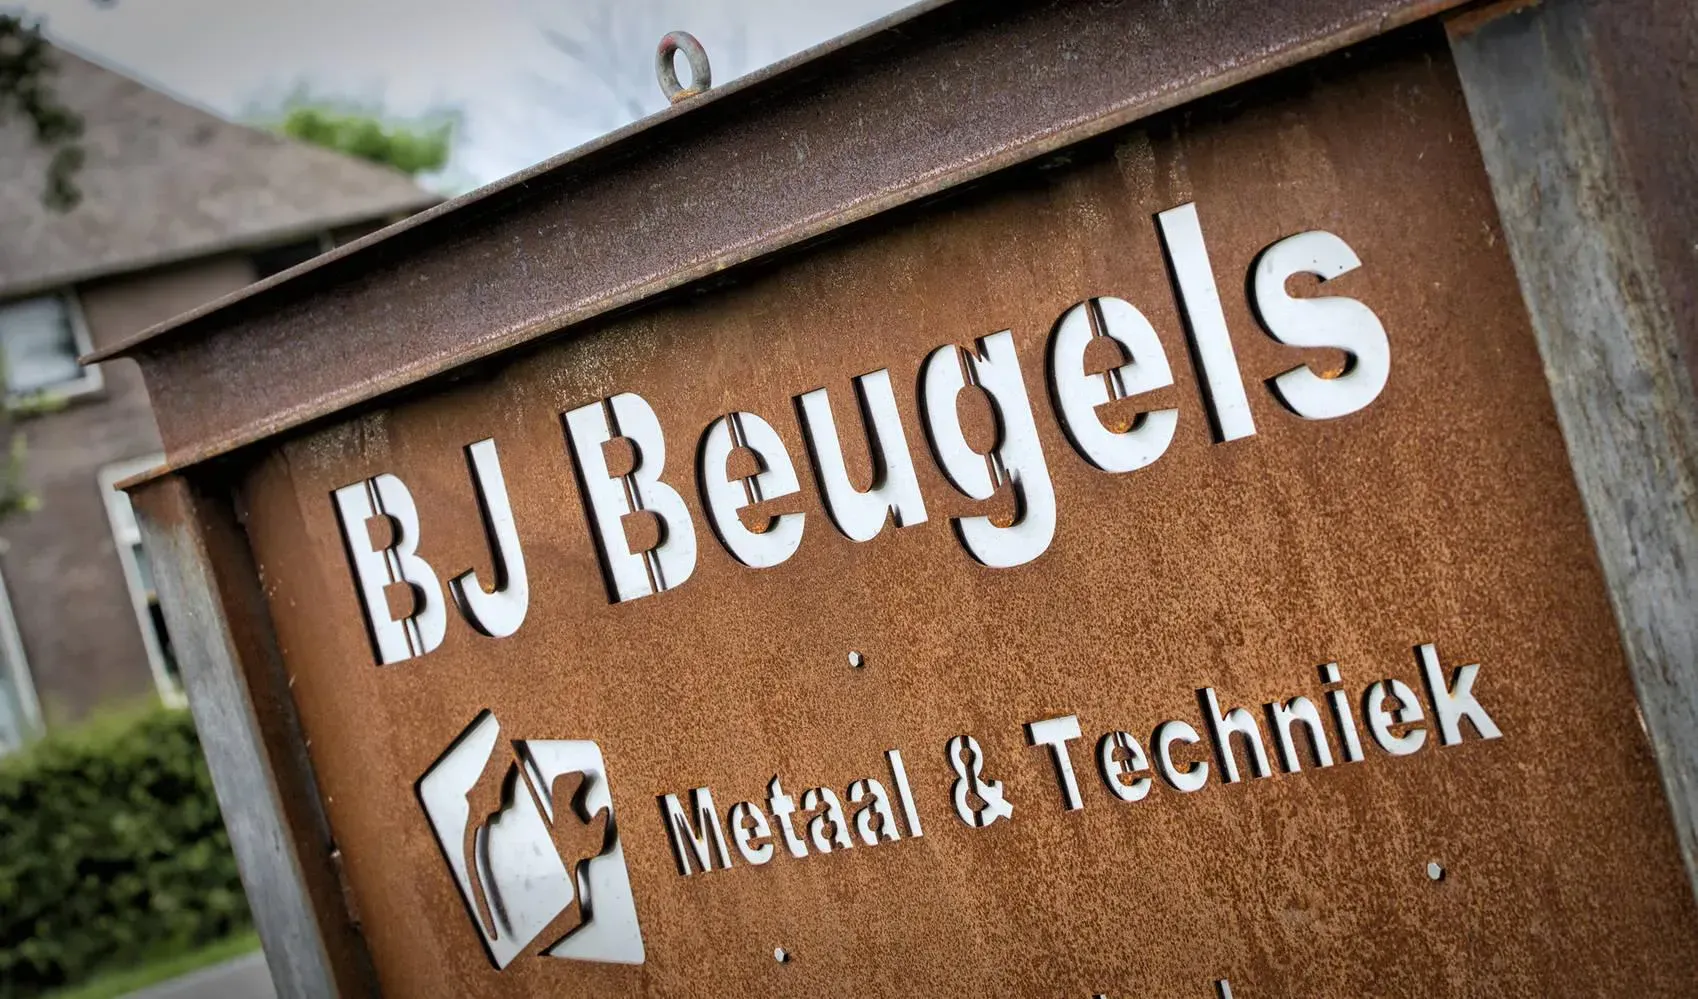 BJ Beugels metaal en techniek